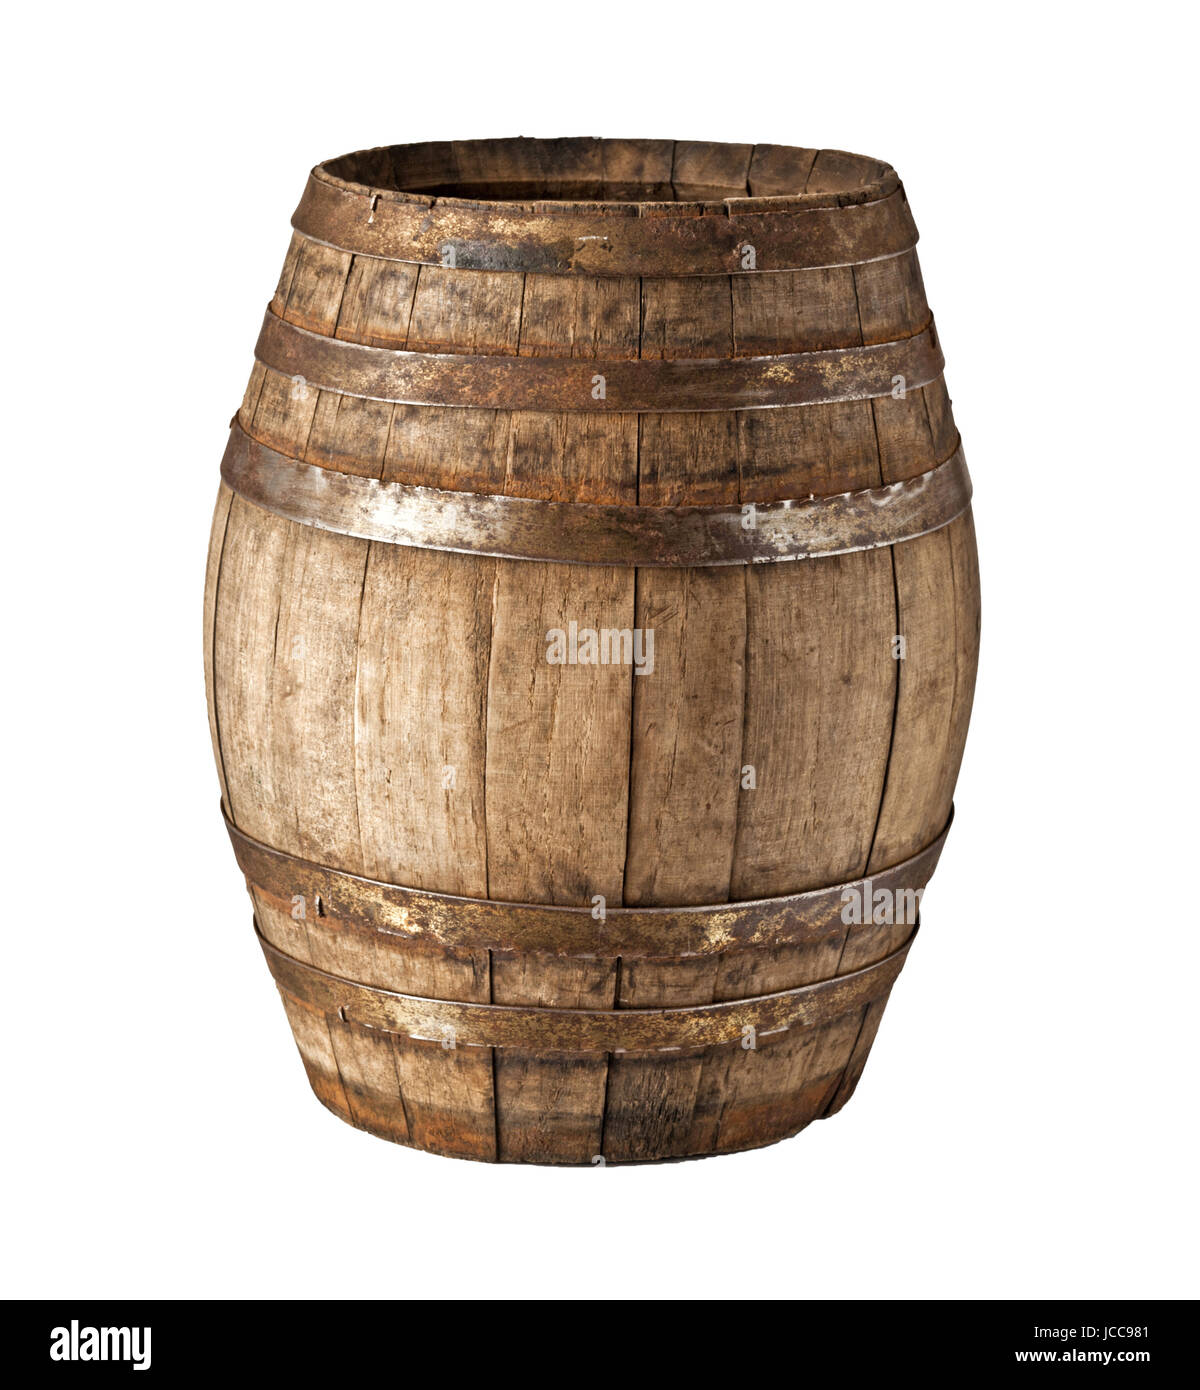 image of classic wood barrel on white background Stock Photo